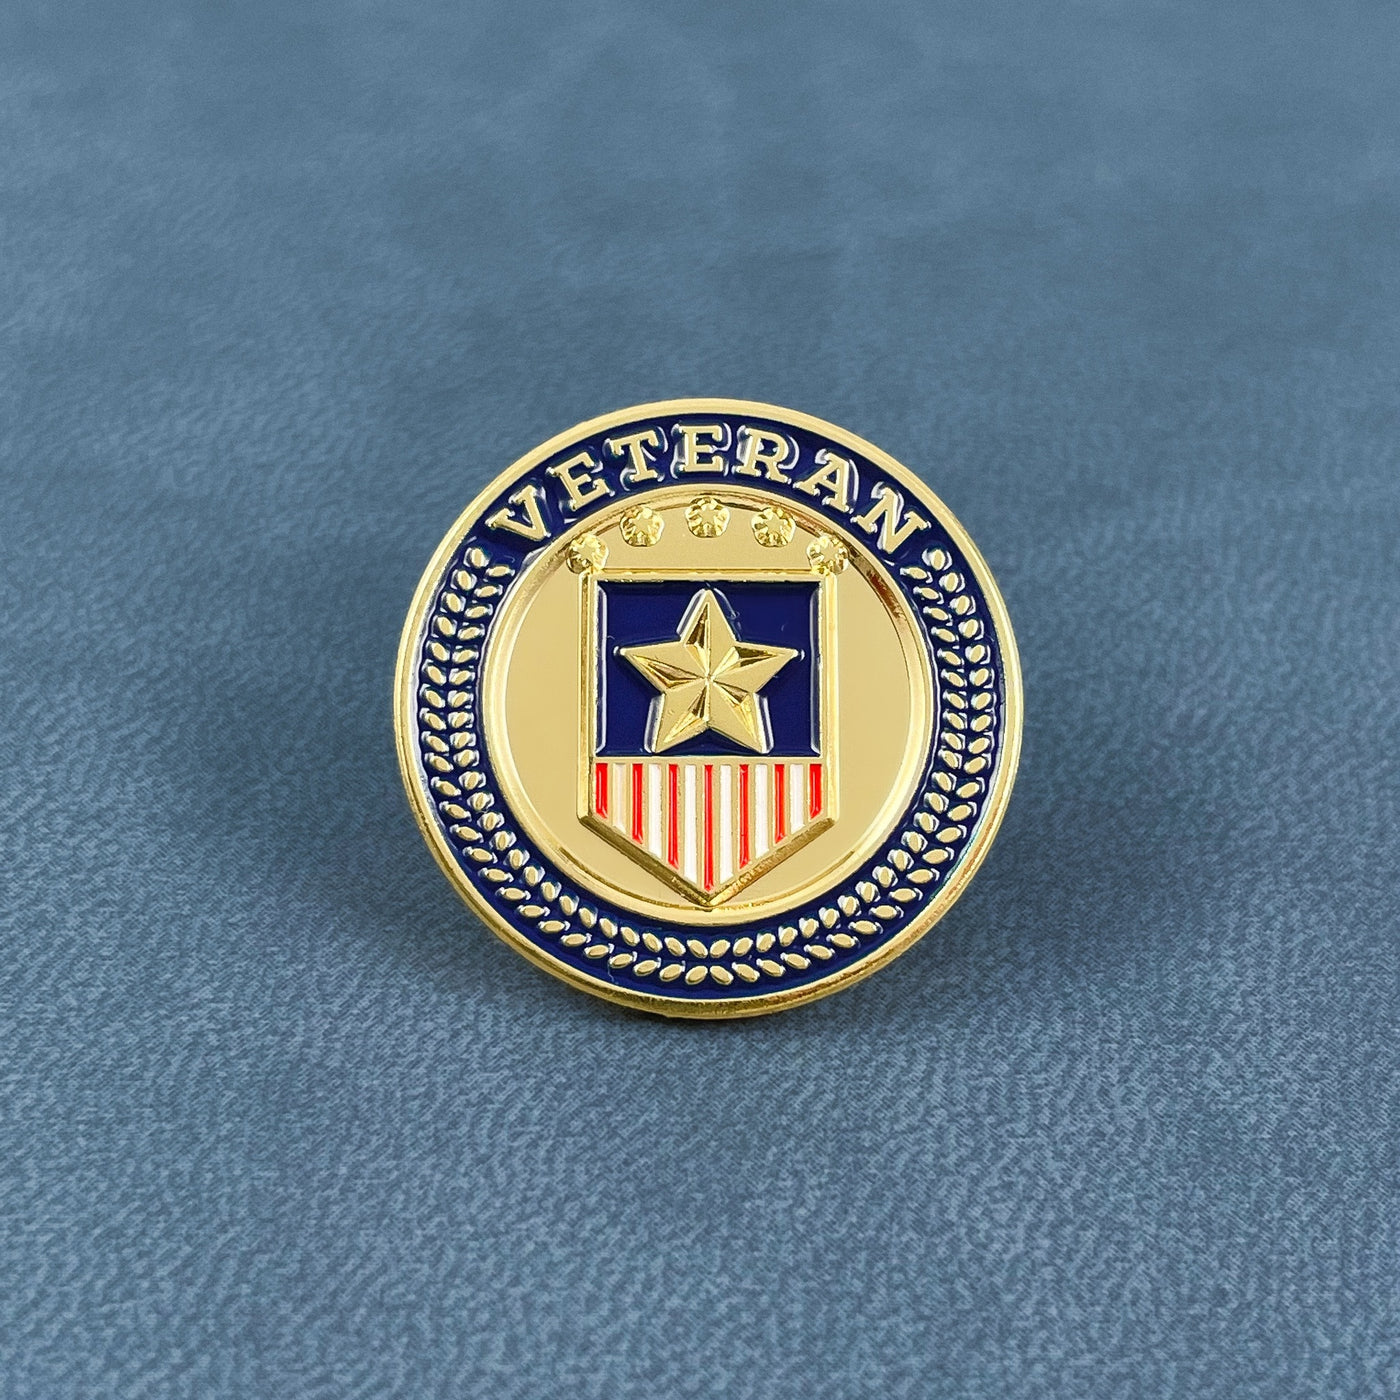 Gold American Veteran Badge